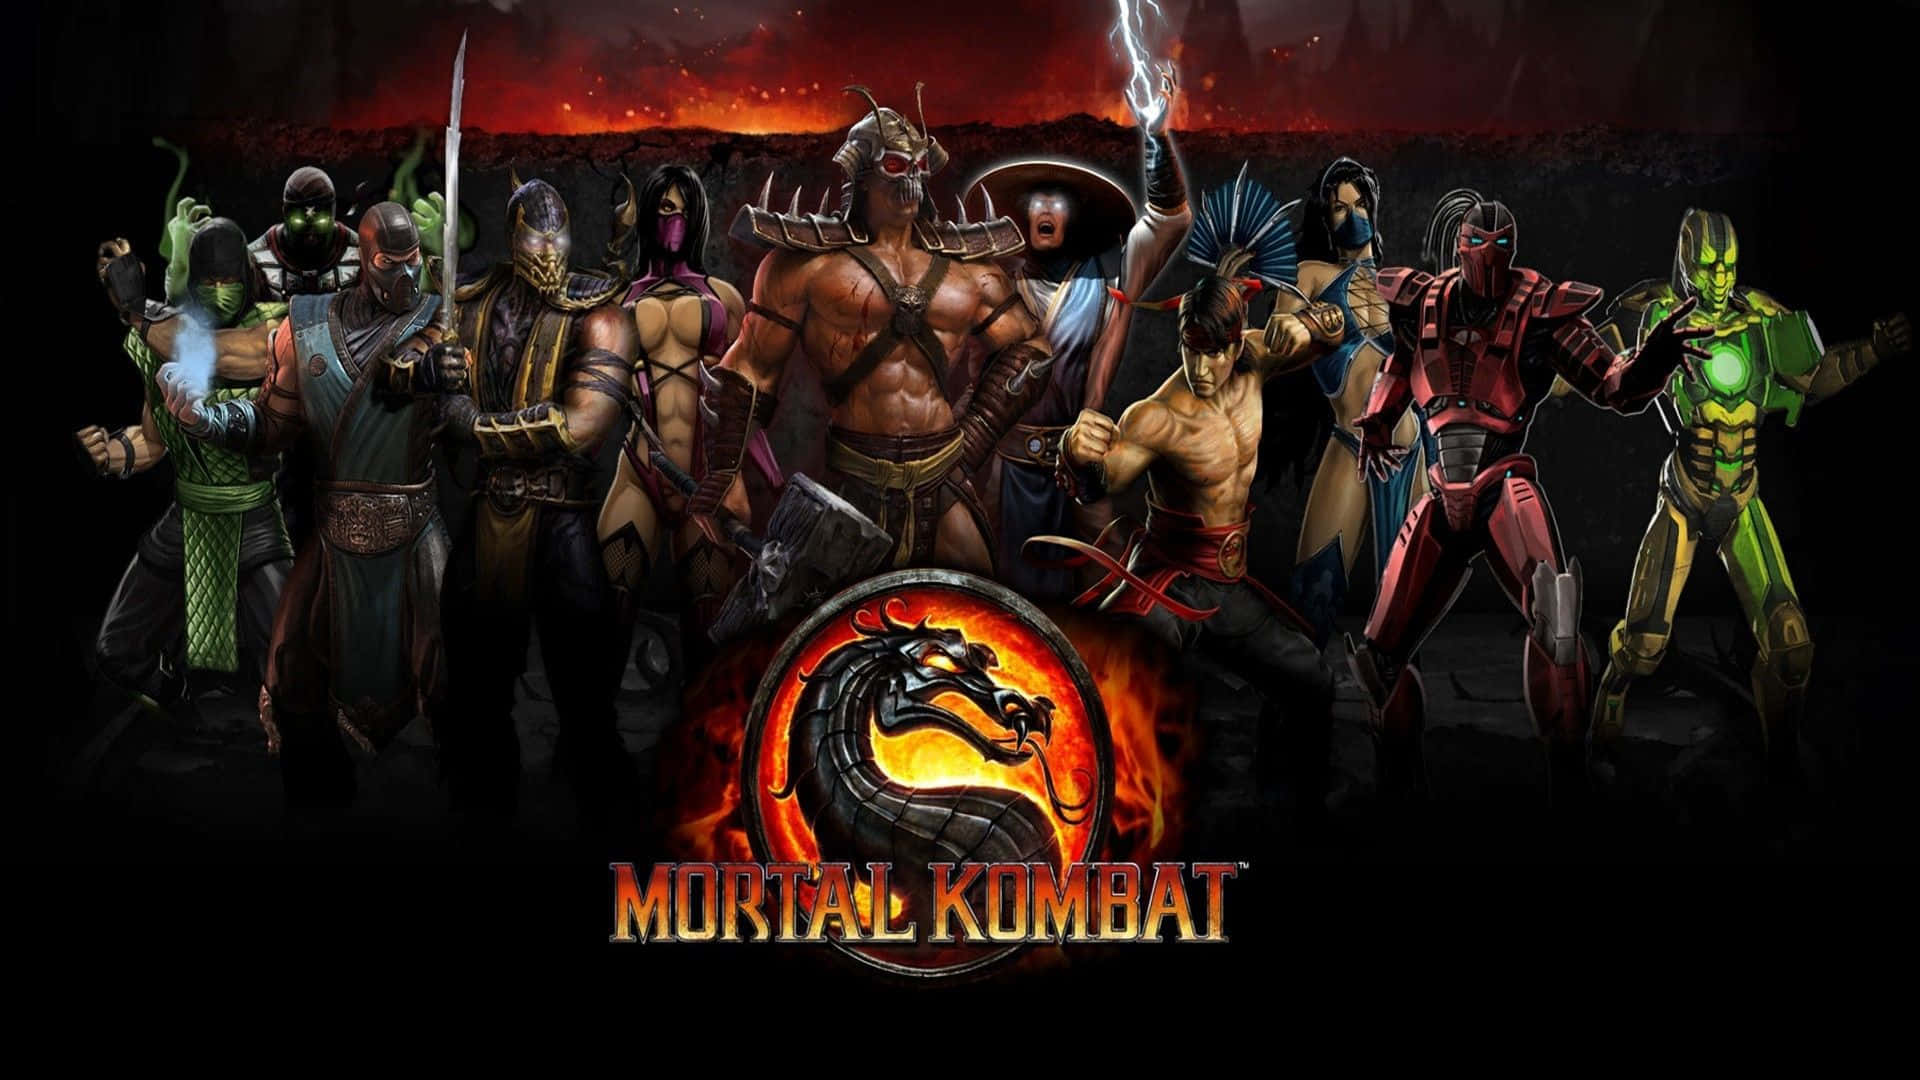 Deadly Assassin Cyrax in Mortal Kombat Wallpaper